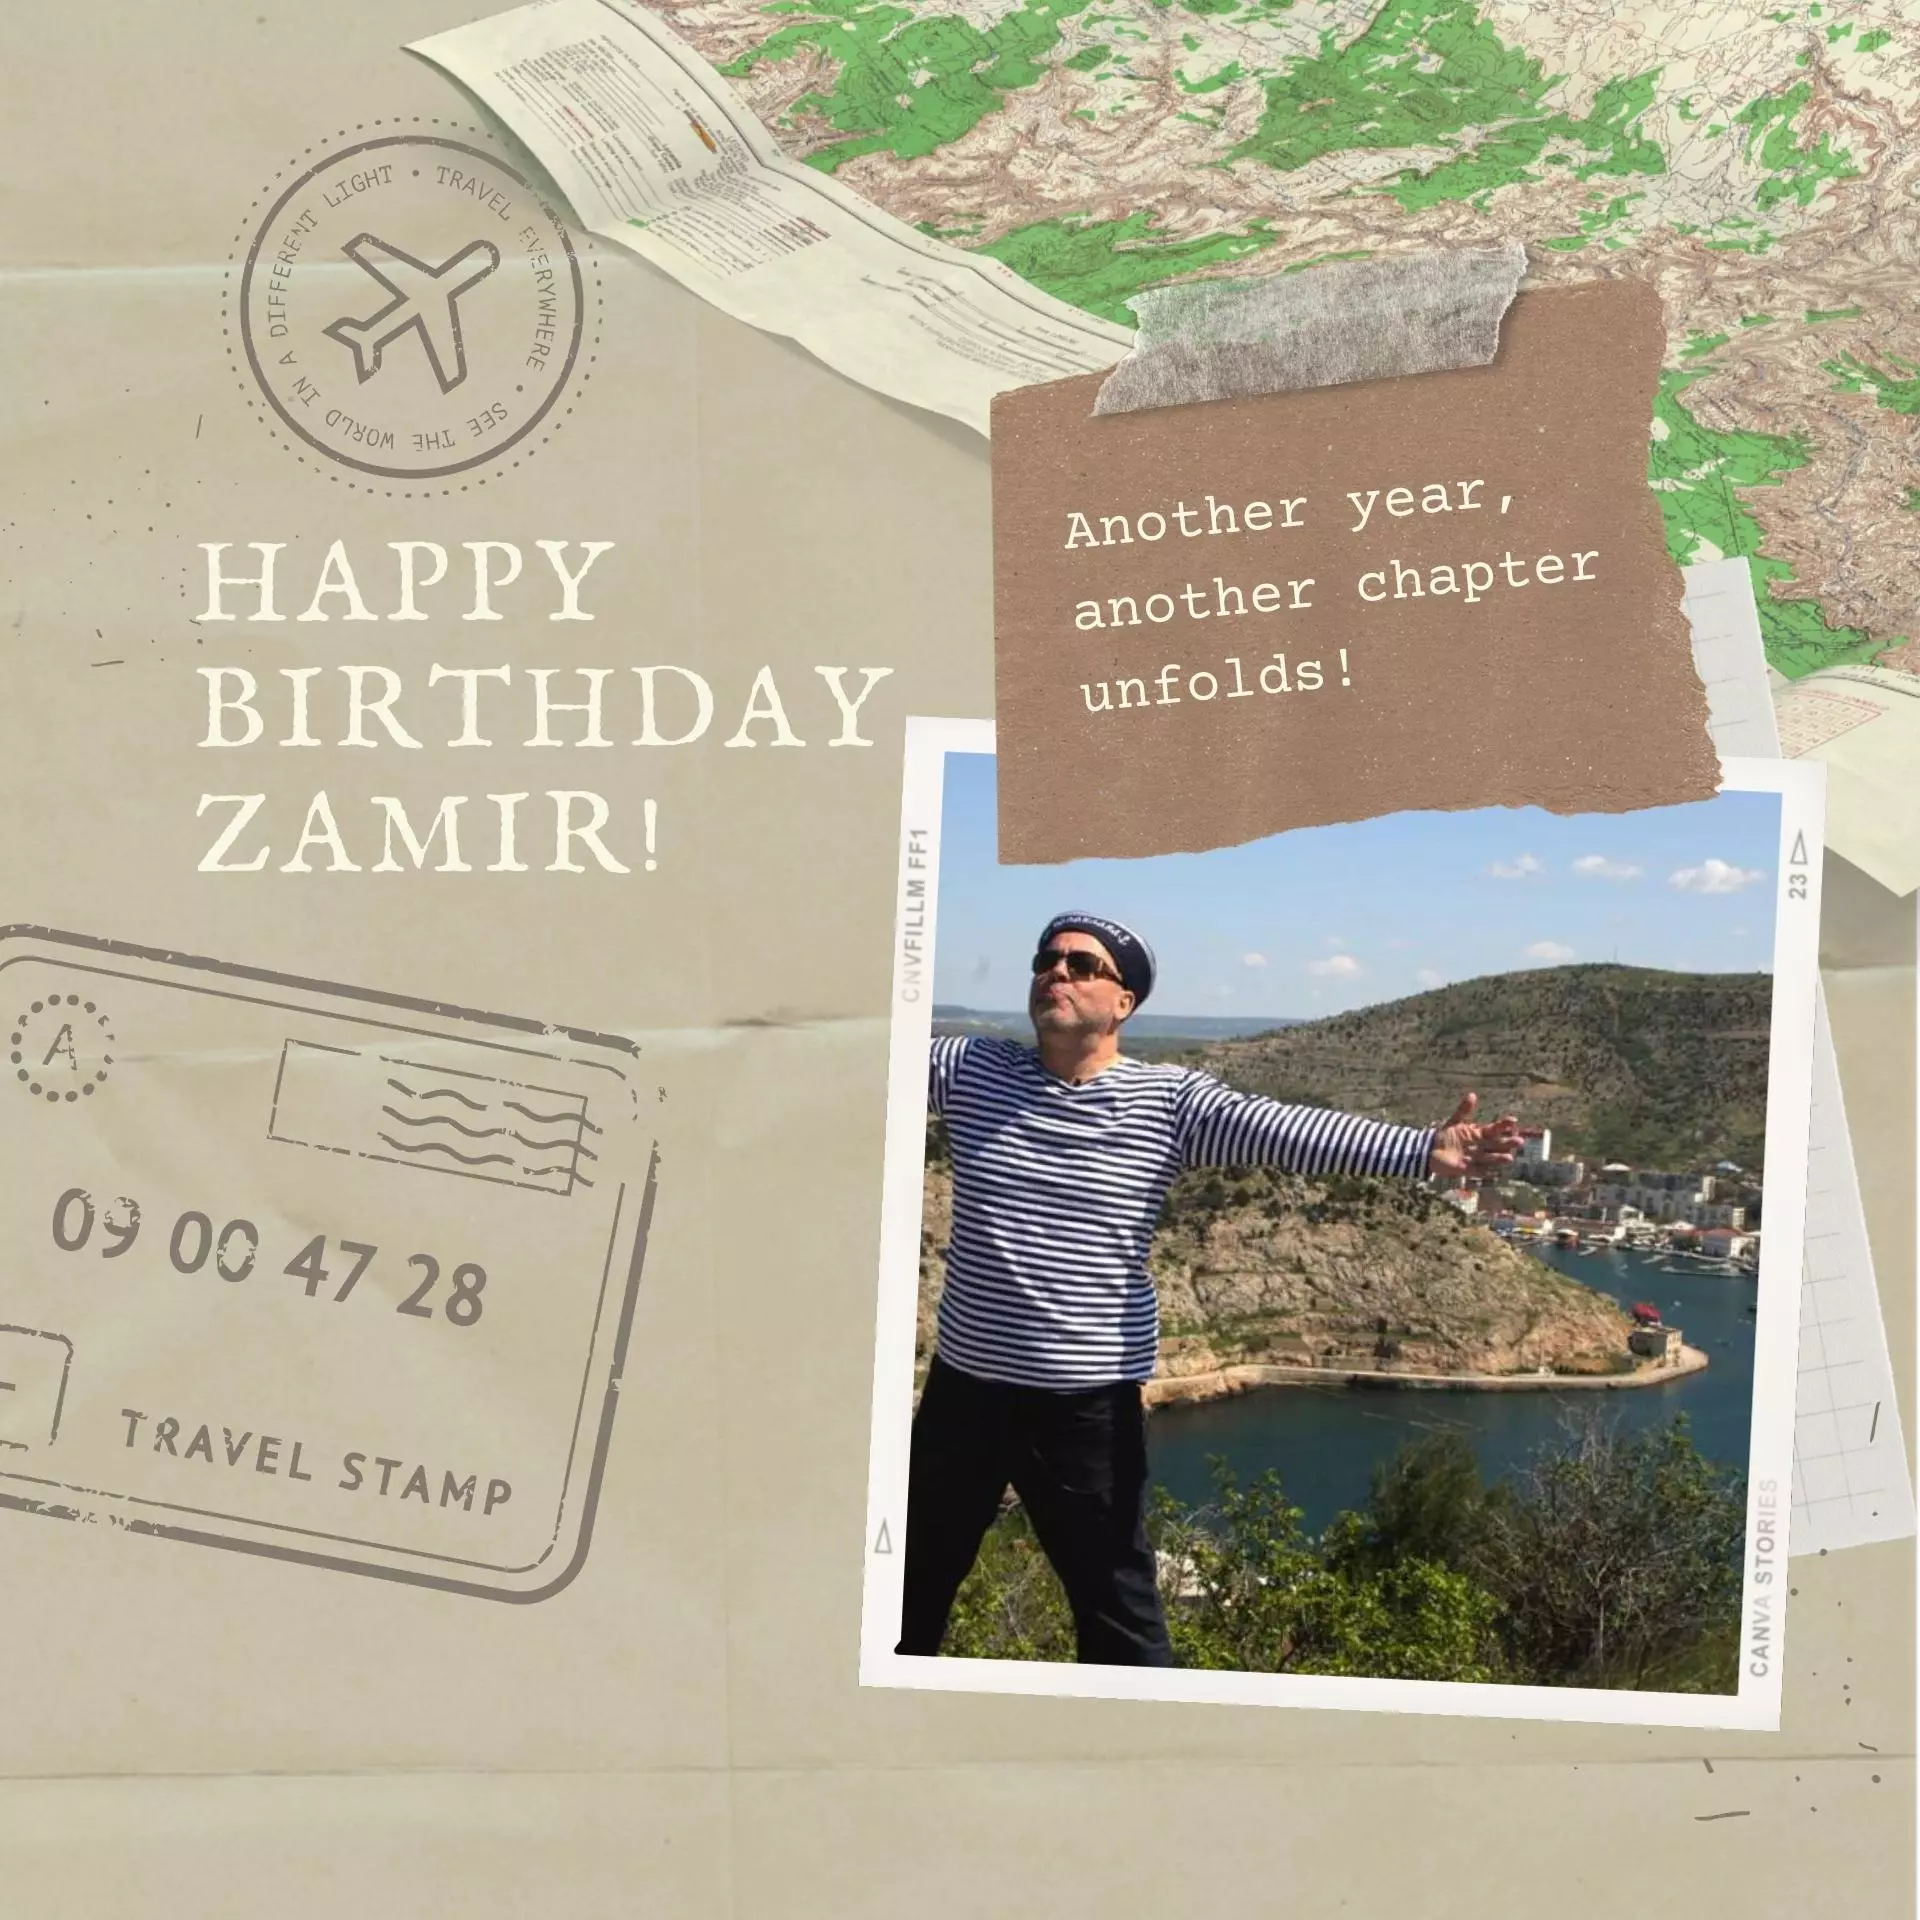 Happy Birthday Zamir from Stephanie Pyrzynski